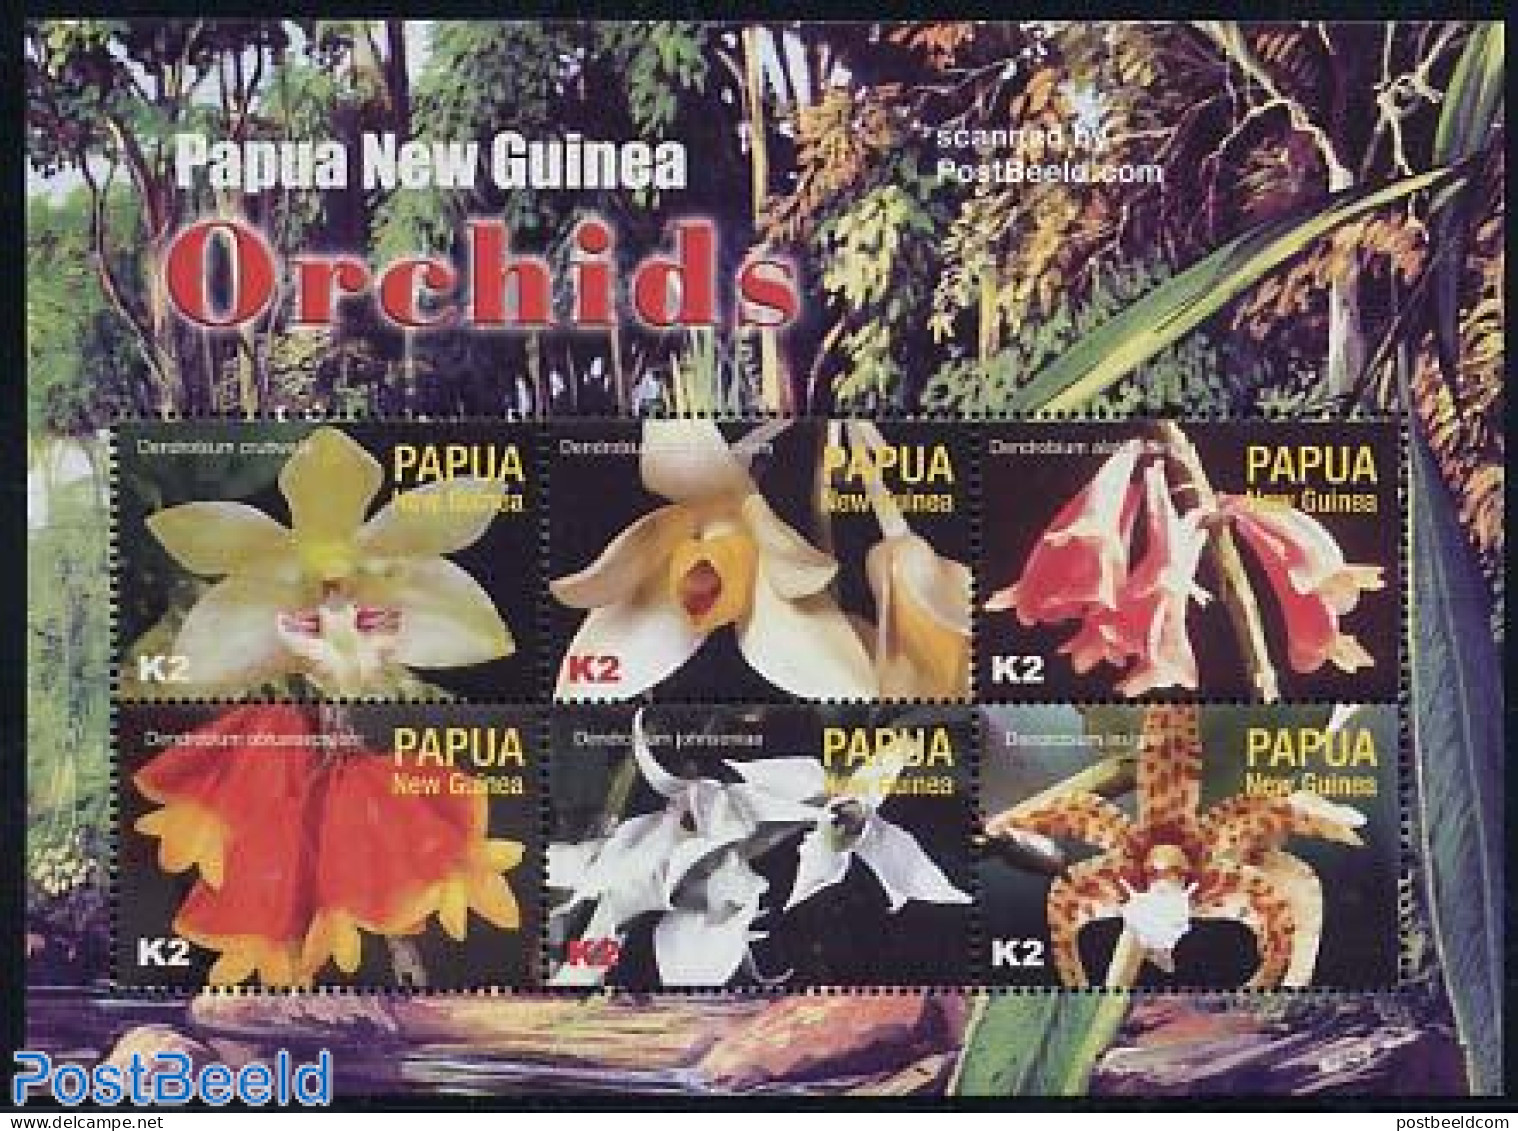 Papua New Guinea 2004 Orchids 6v M/s, Dendrobium Cruttwellii, Mint NH, Nature - Flowers & Plants - Orchids - Papouasie-Nouvelle-Guinée